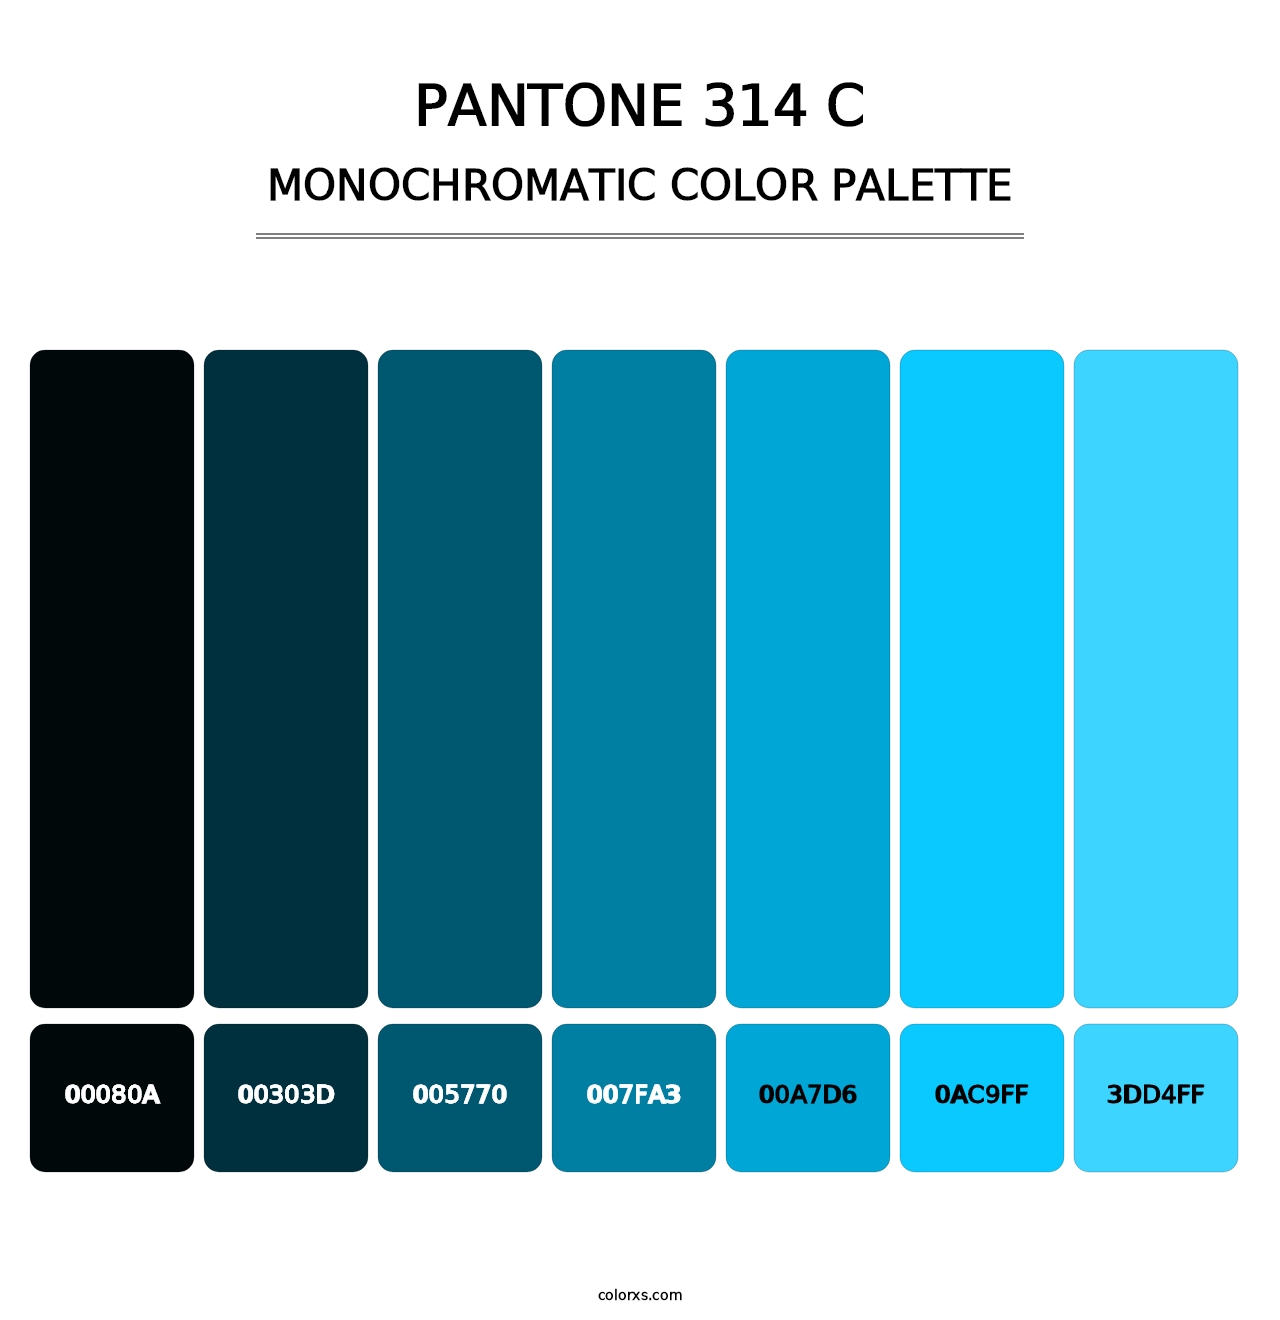 PANTONE 314 C - Monochromatic Color Palette